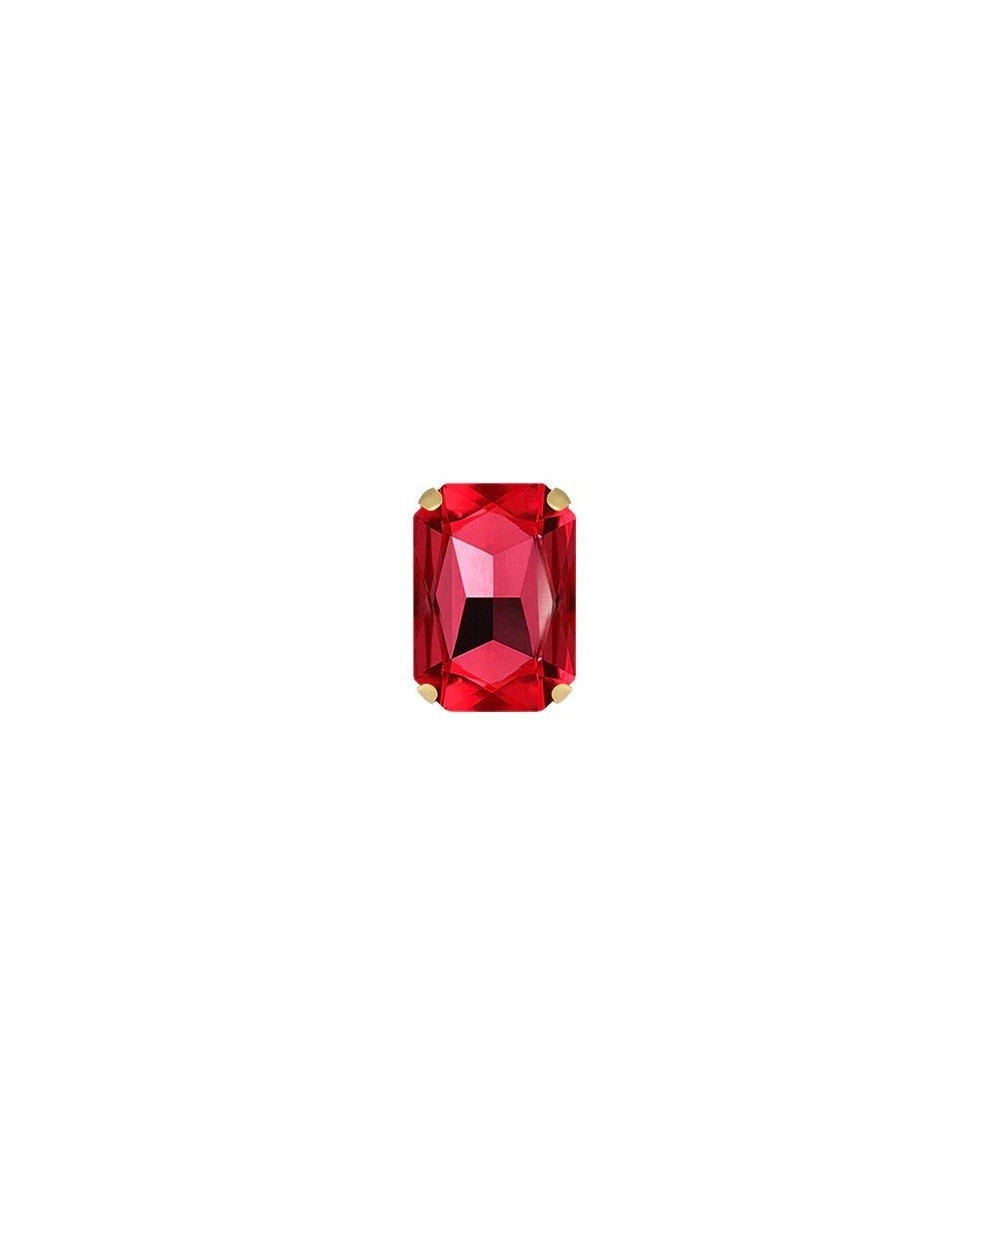 Stačiakampiai prisiuvami kristalai raudonos sp., 10x14mm, 1 vnt.